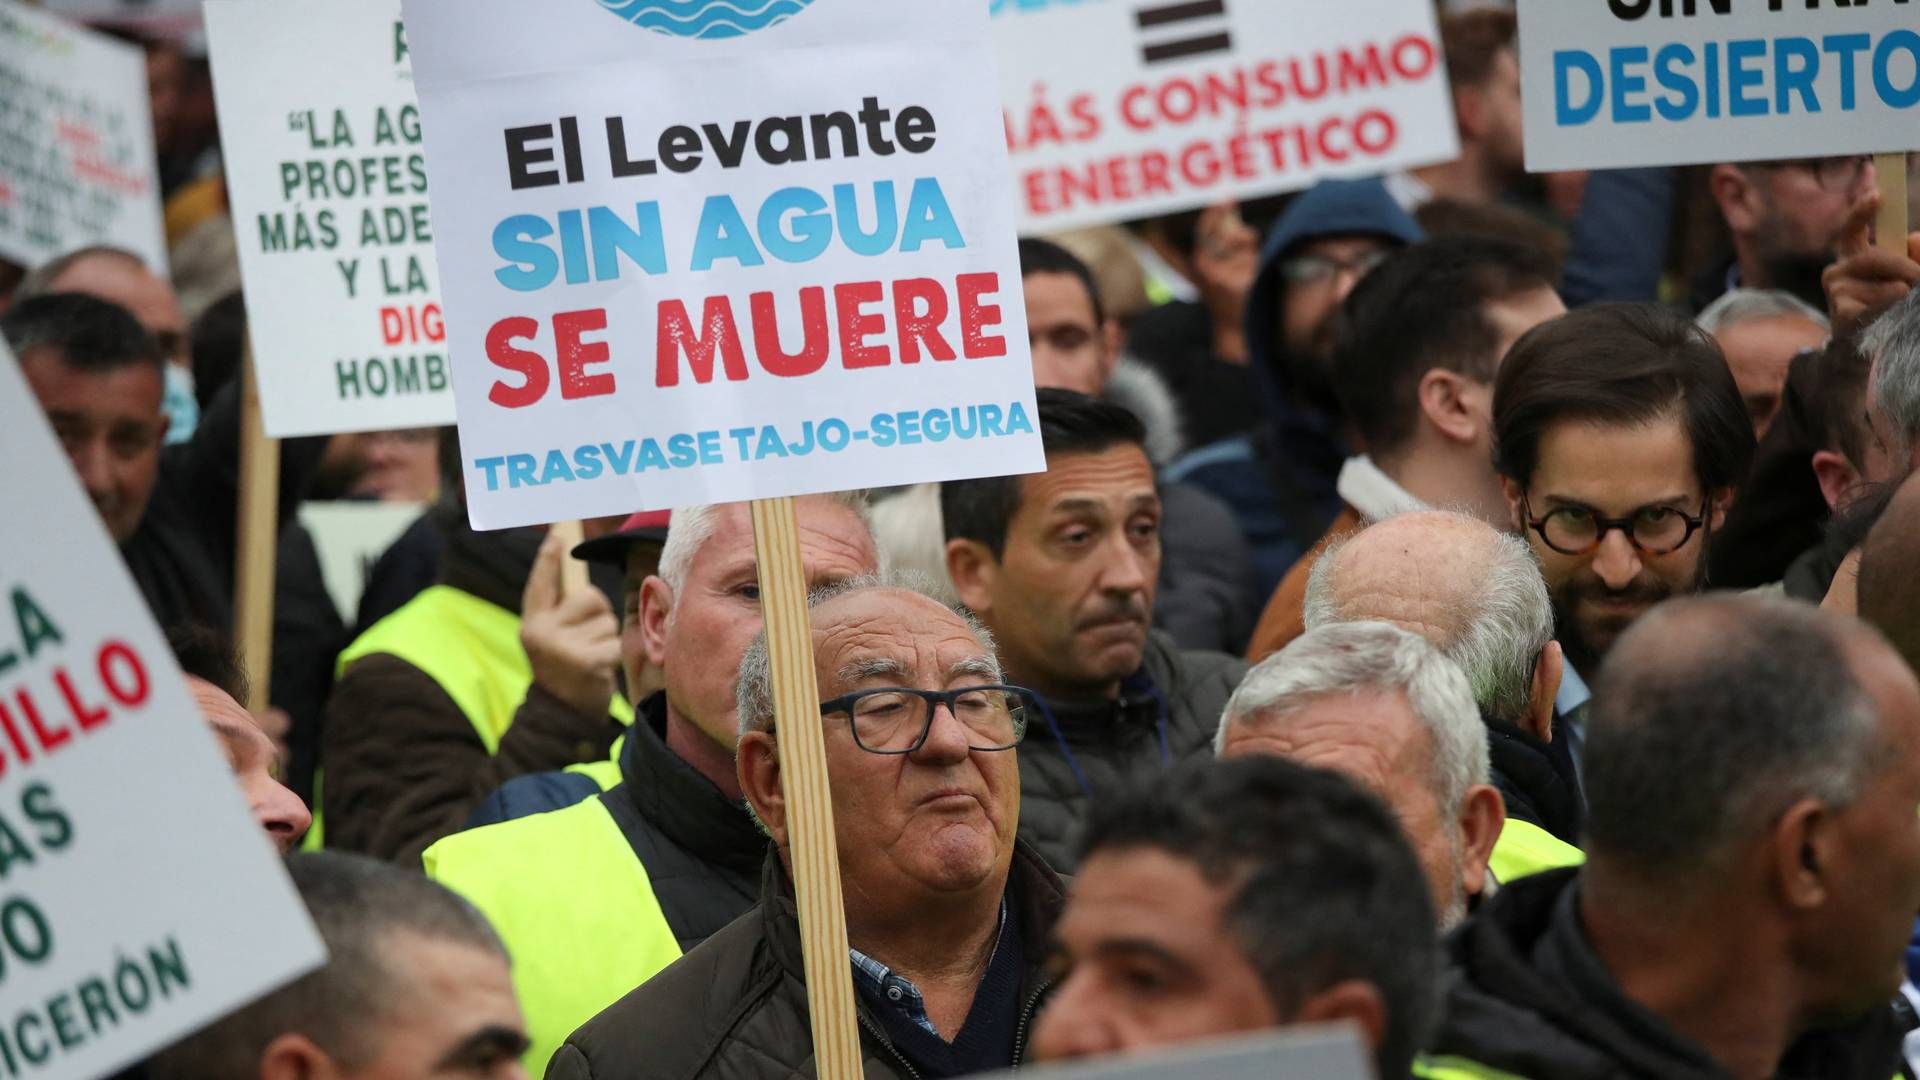 Examen album Afslag Bliv sur Tusindvis af landmænd demonstrerer i spansk hovedstad — AgriWatch